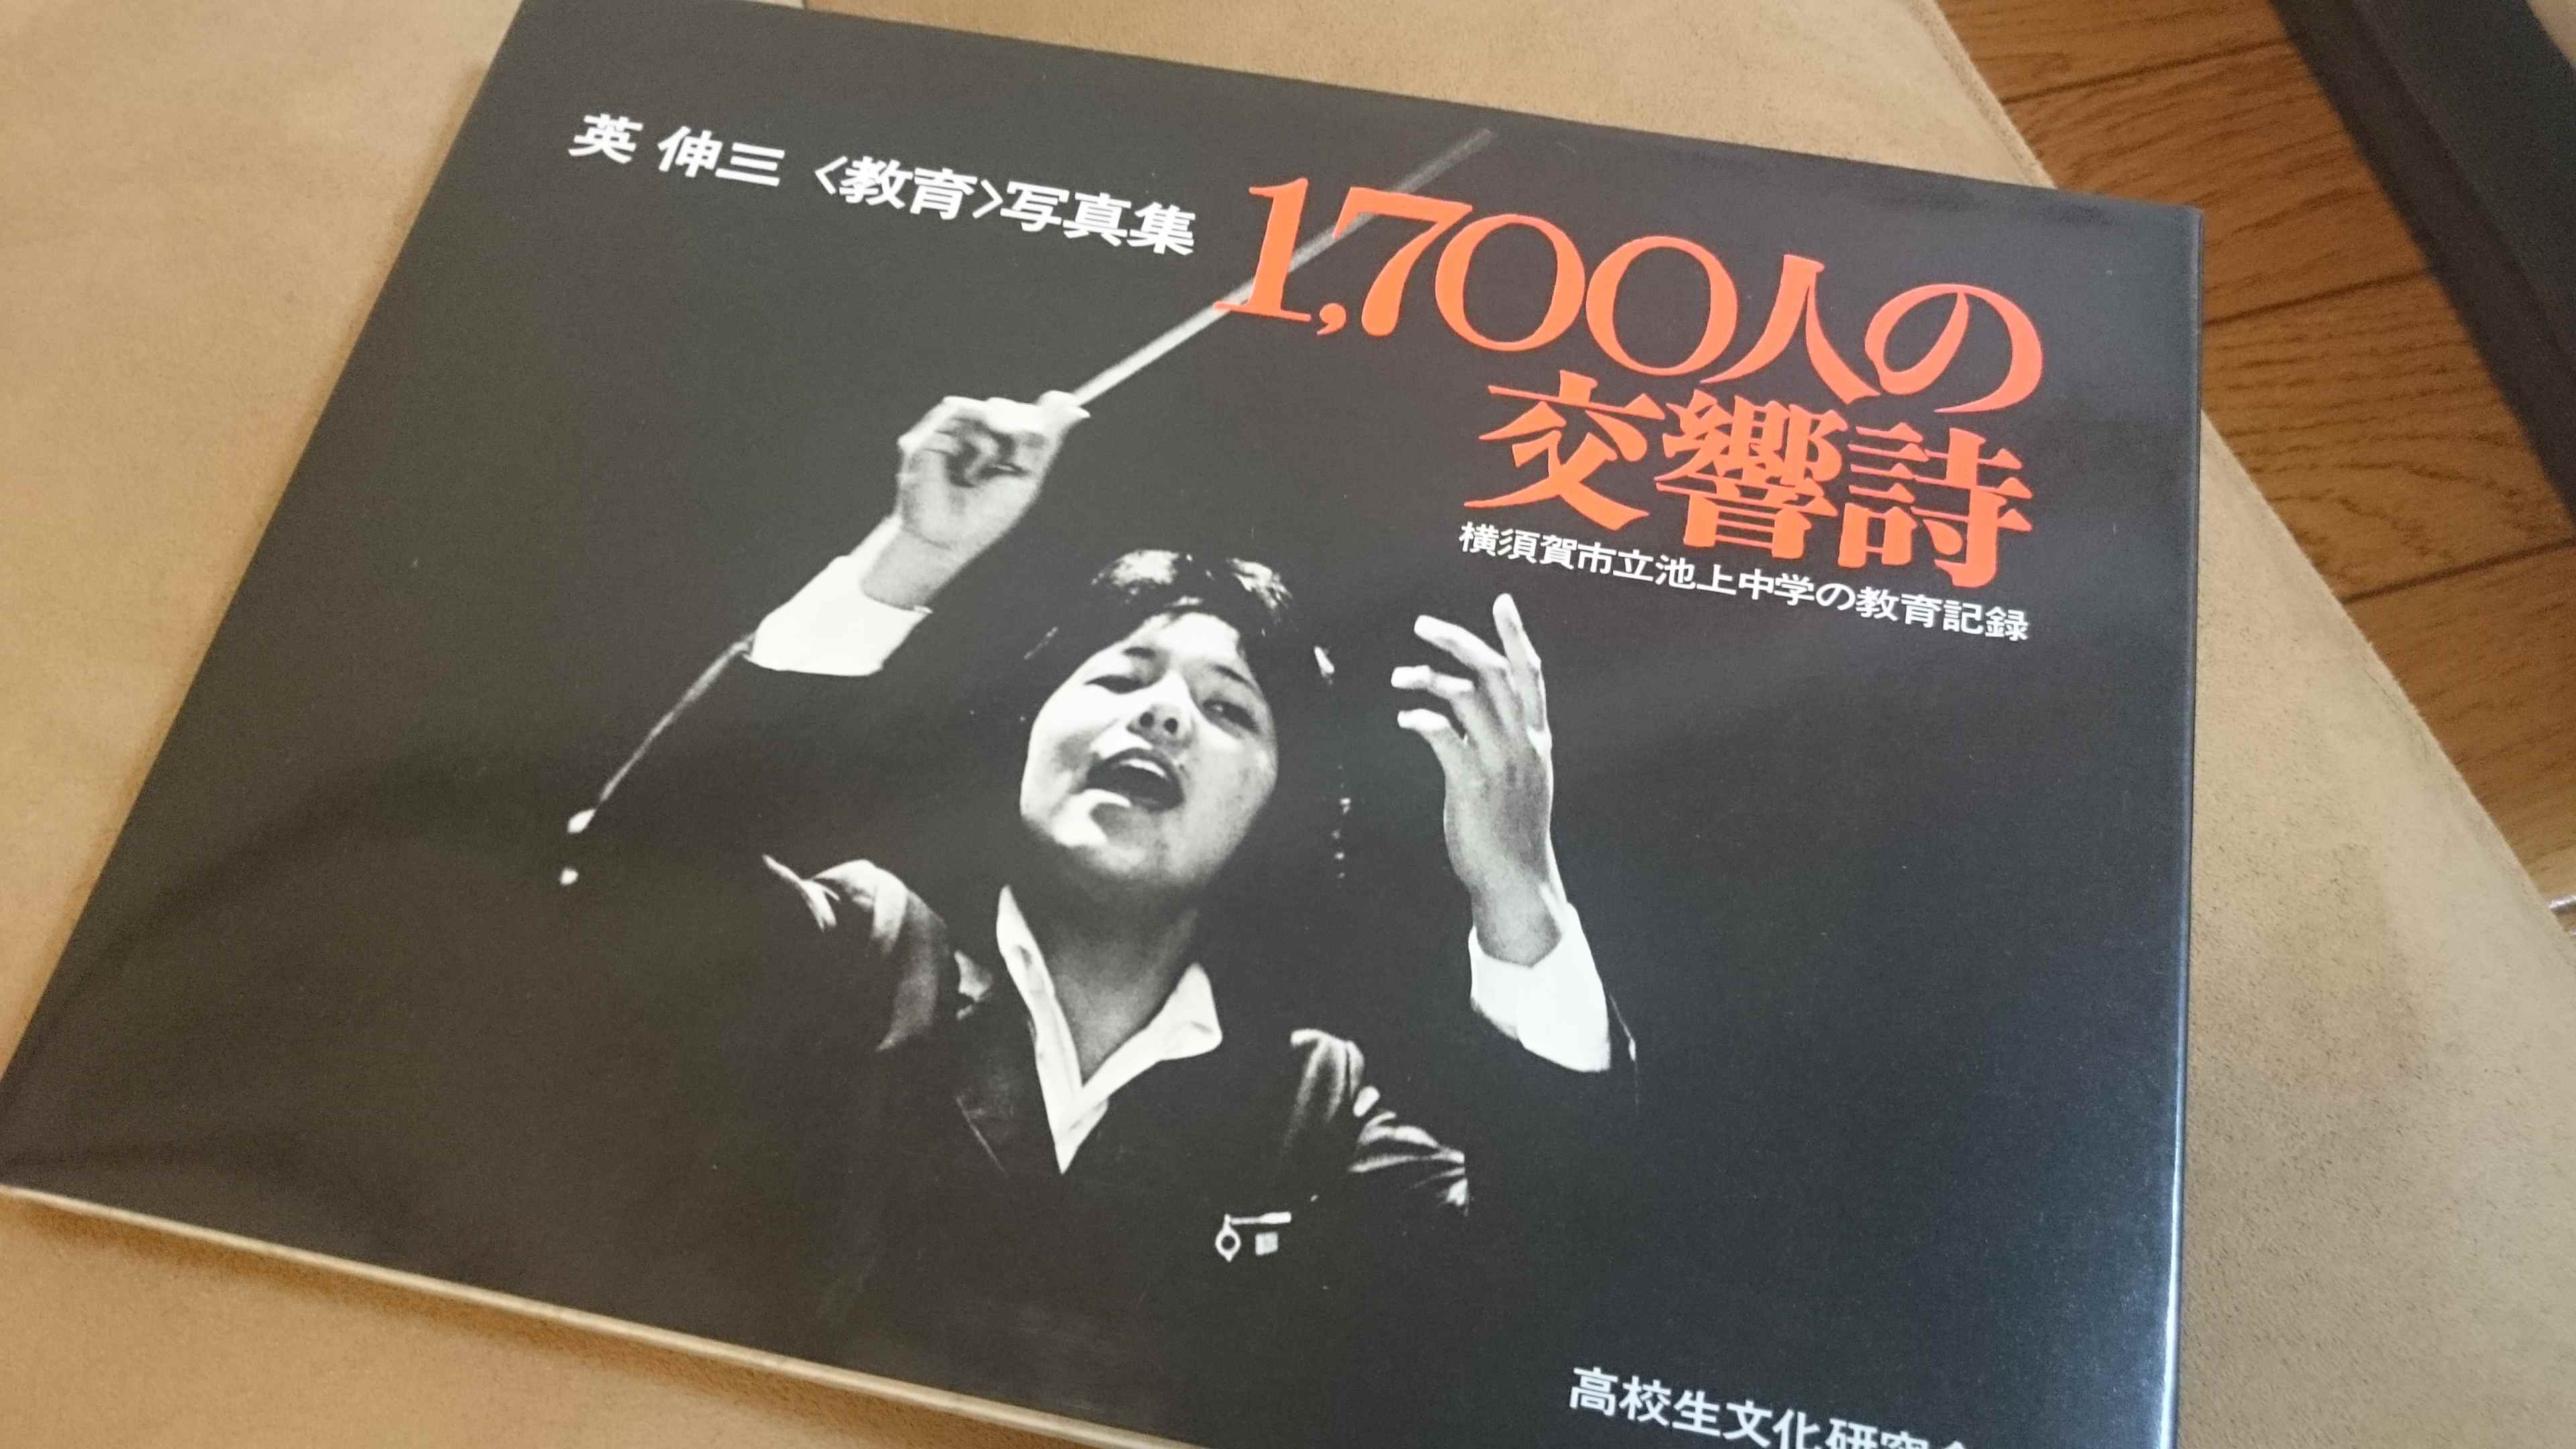 1977年の横須賀市立池上中学を写した写真集「1,700人の交響詩」